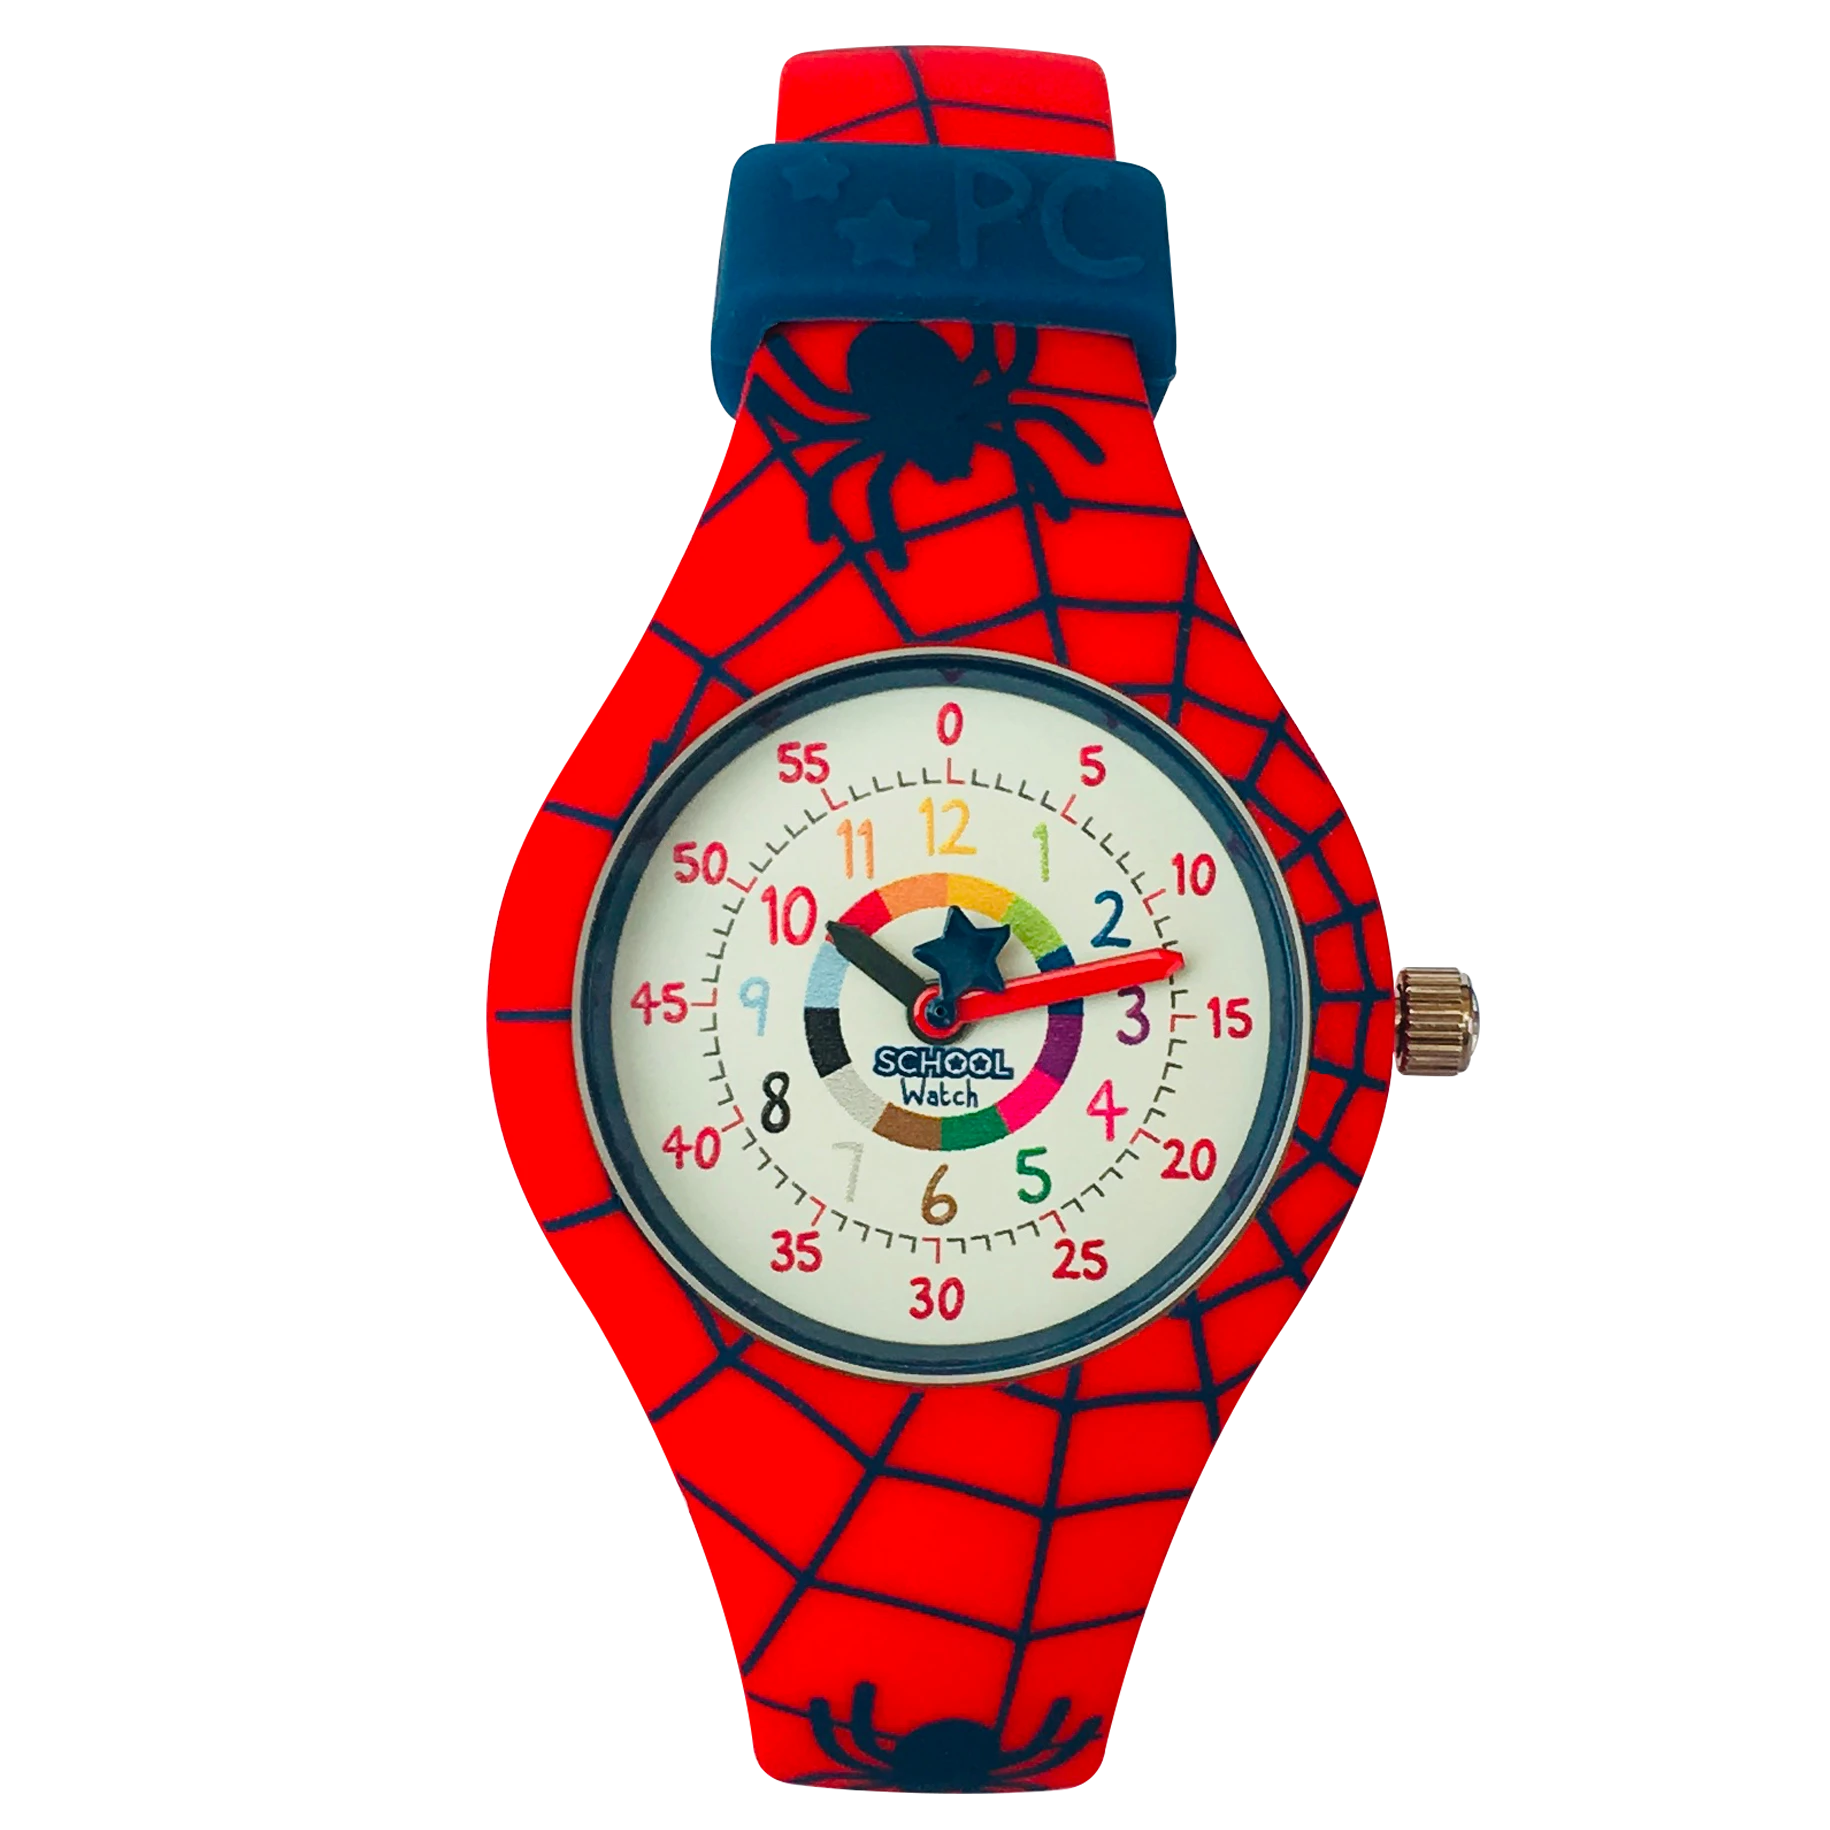 Spider Watch